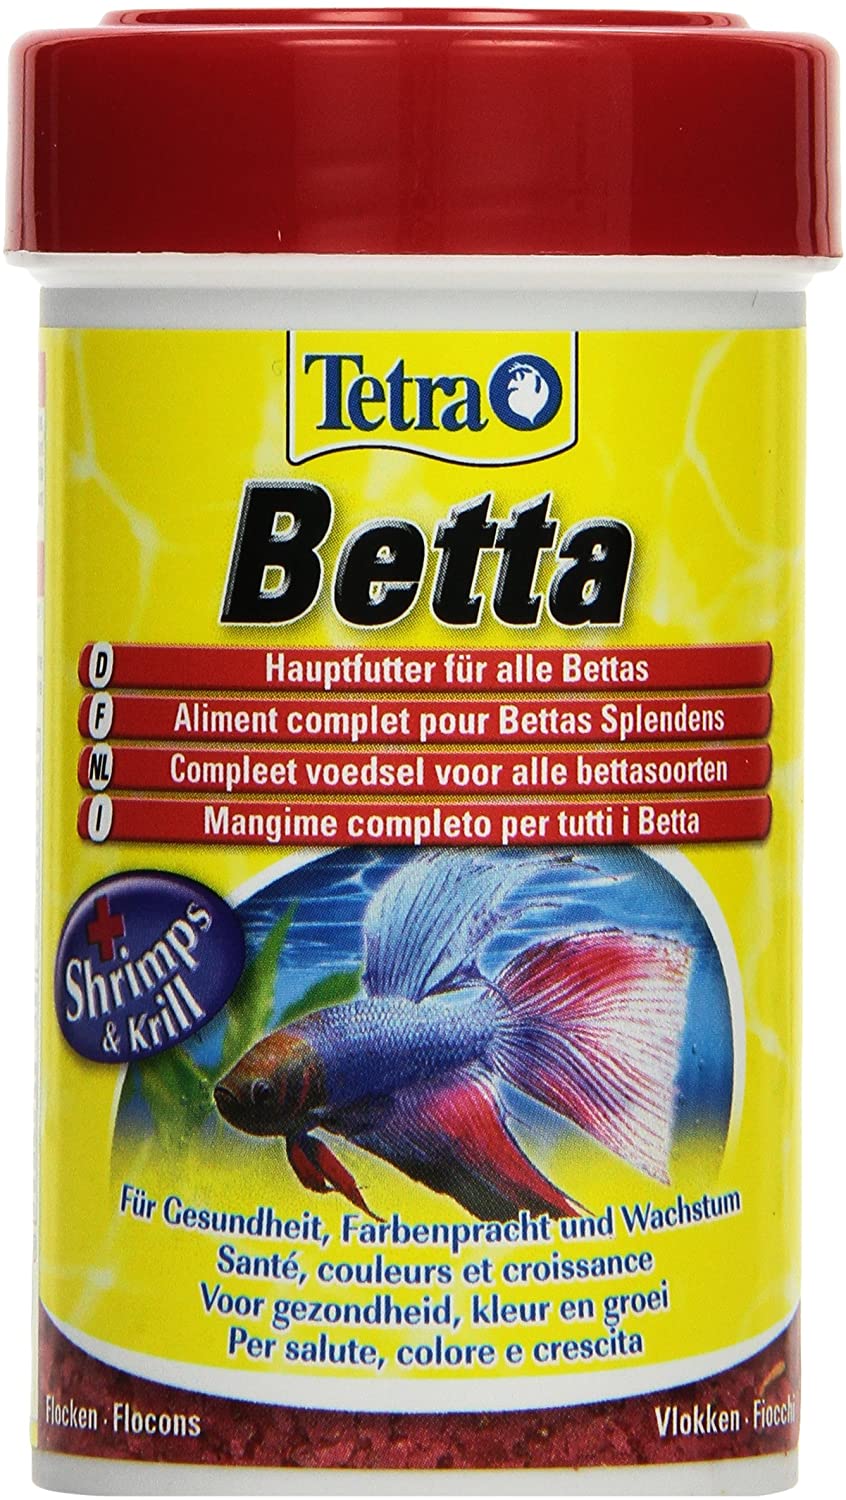  Tetra Betta 100 ml / 27 g 